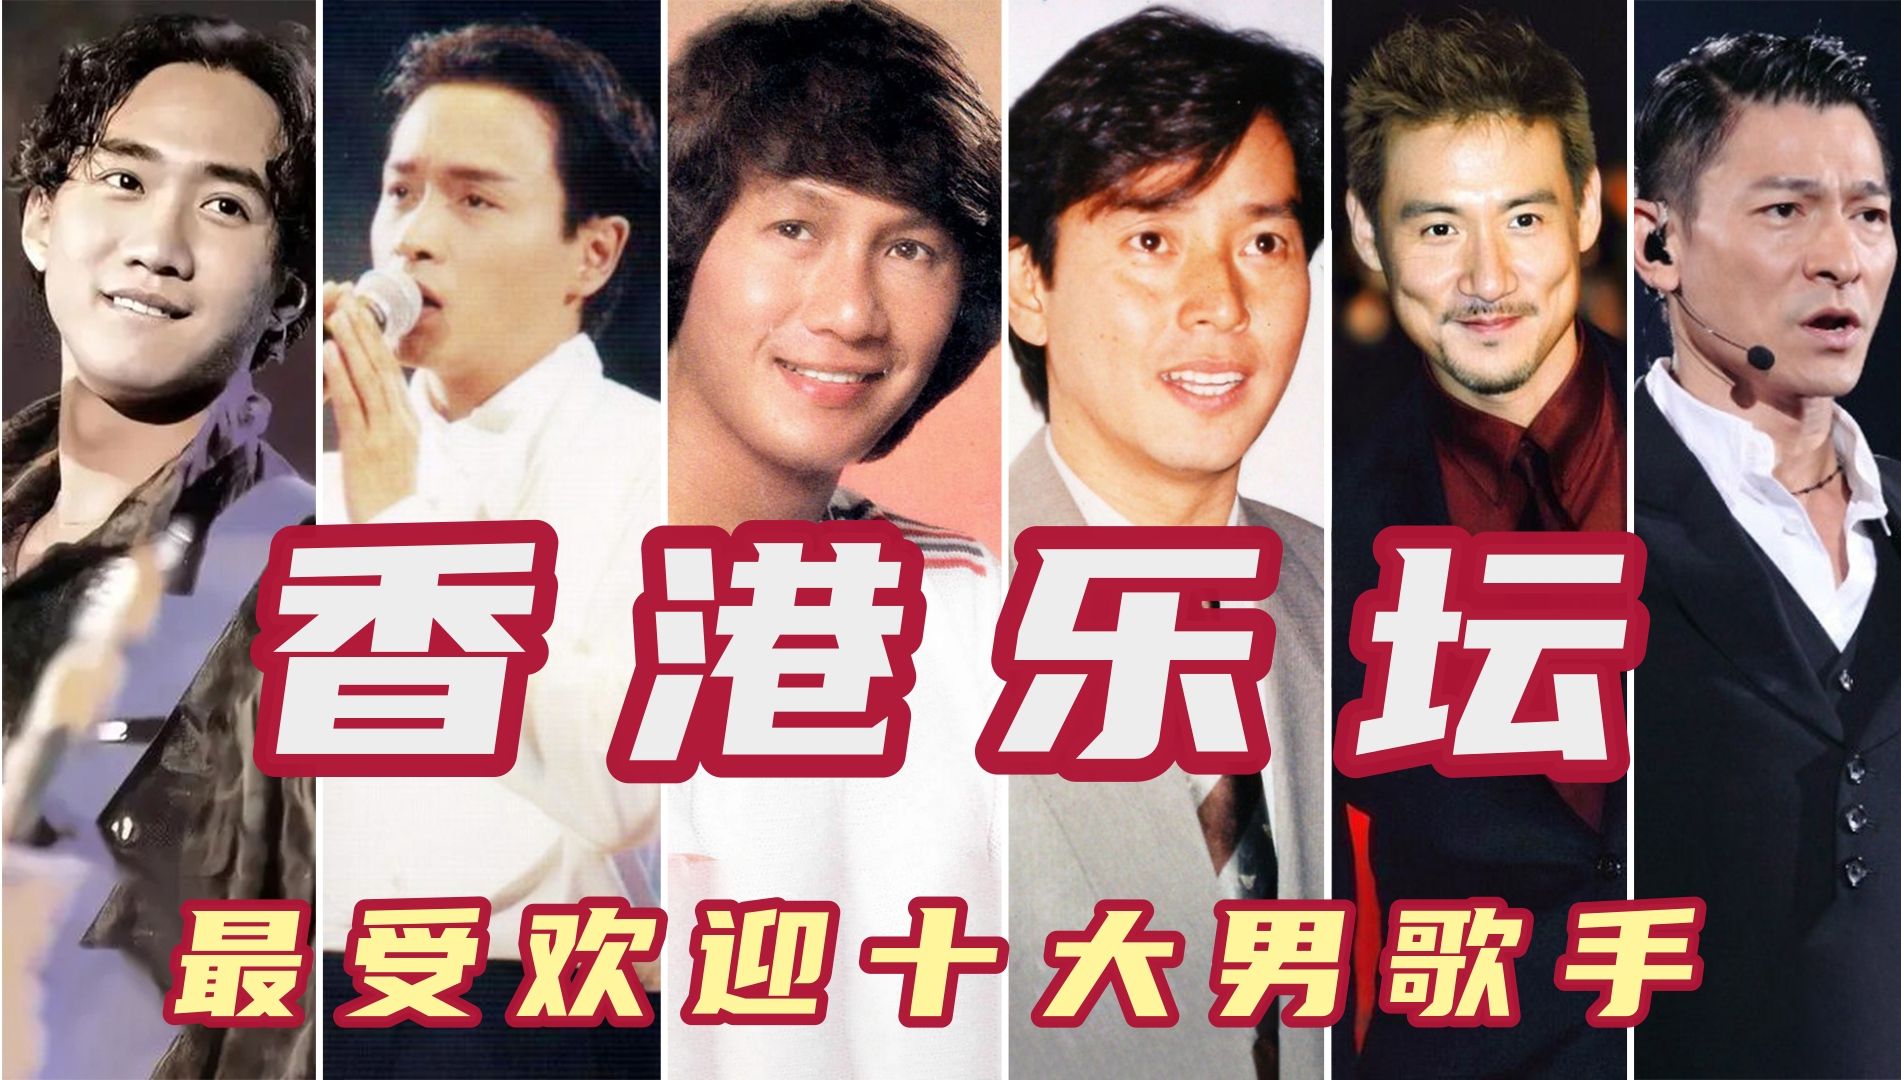 香港乐坛最受欢迎十大男歌手,张学友第三谭咏麟第四,黄家驹垫底